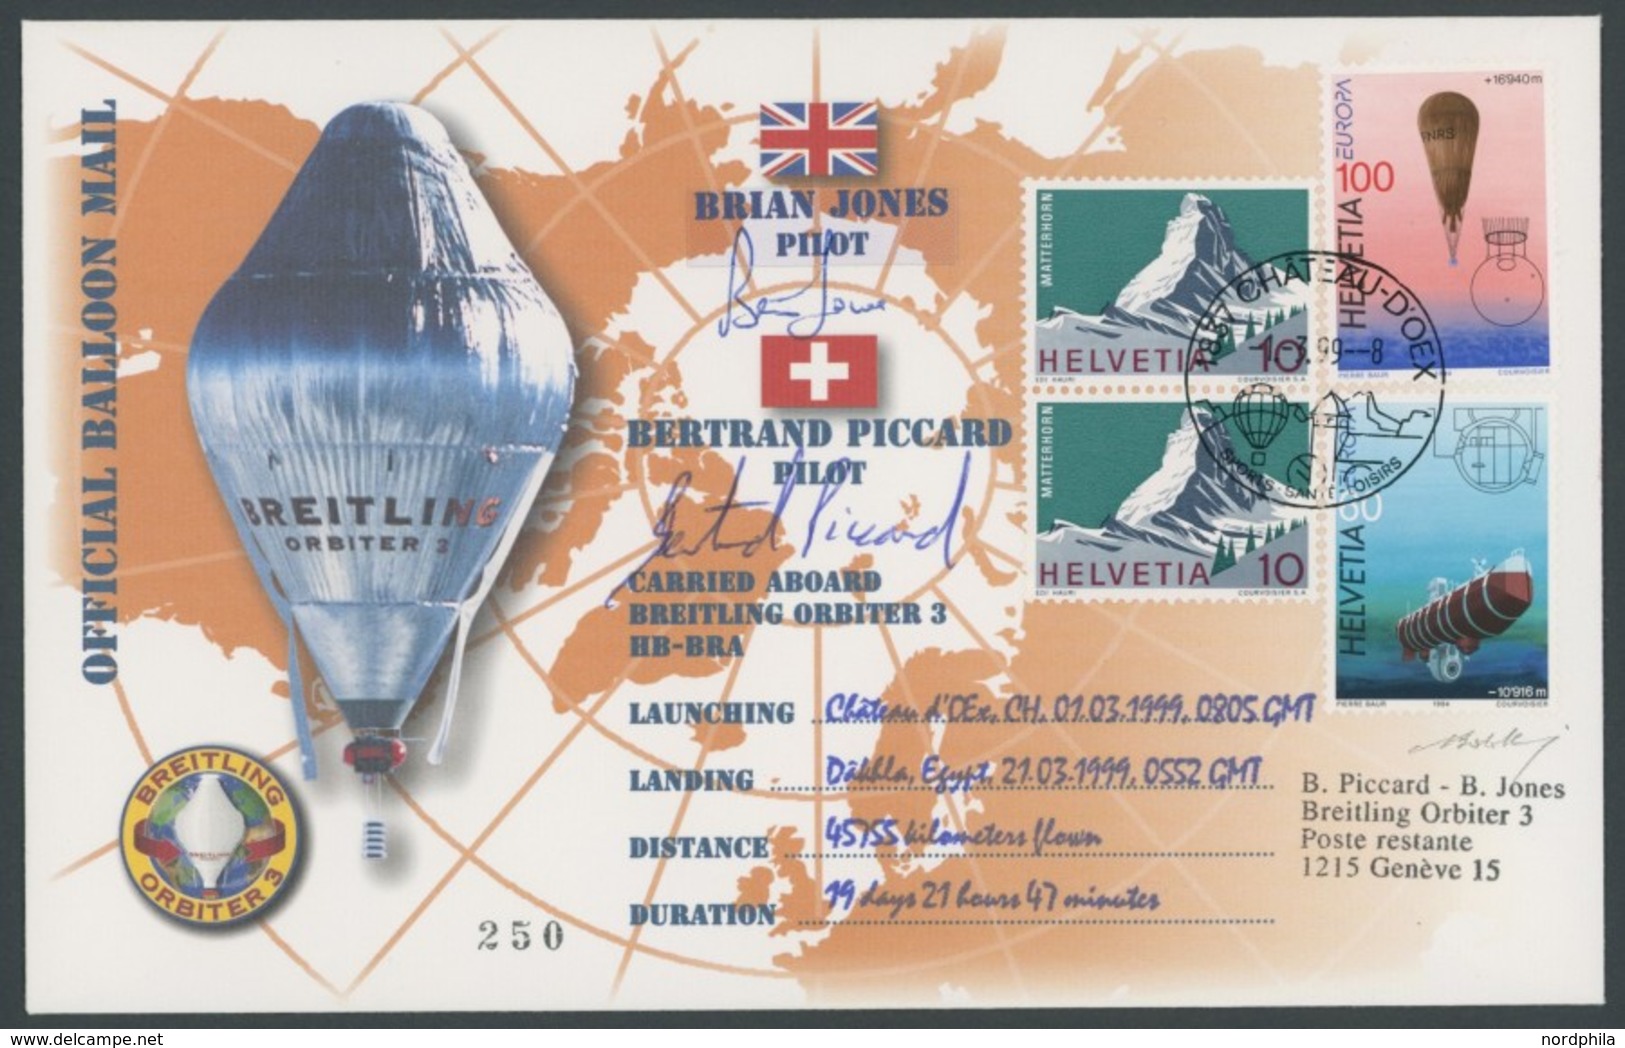 LUFTPOST 1999, Orbiter 3 - Weltrund Ballon Rekordflug, 45755 Km In 19 Tagen, Offizielle Ballon Mail Mit Unterschriften D - First Flight Covers